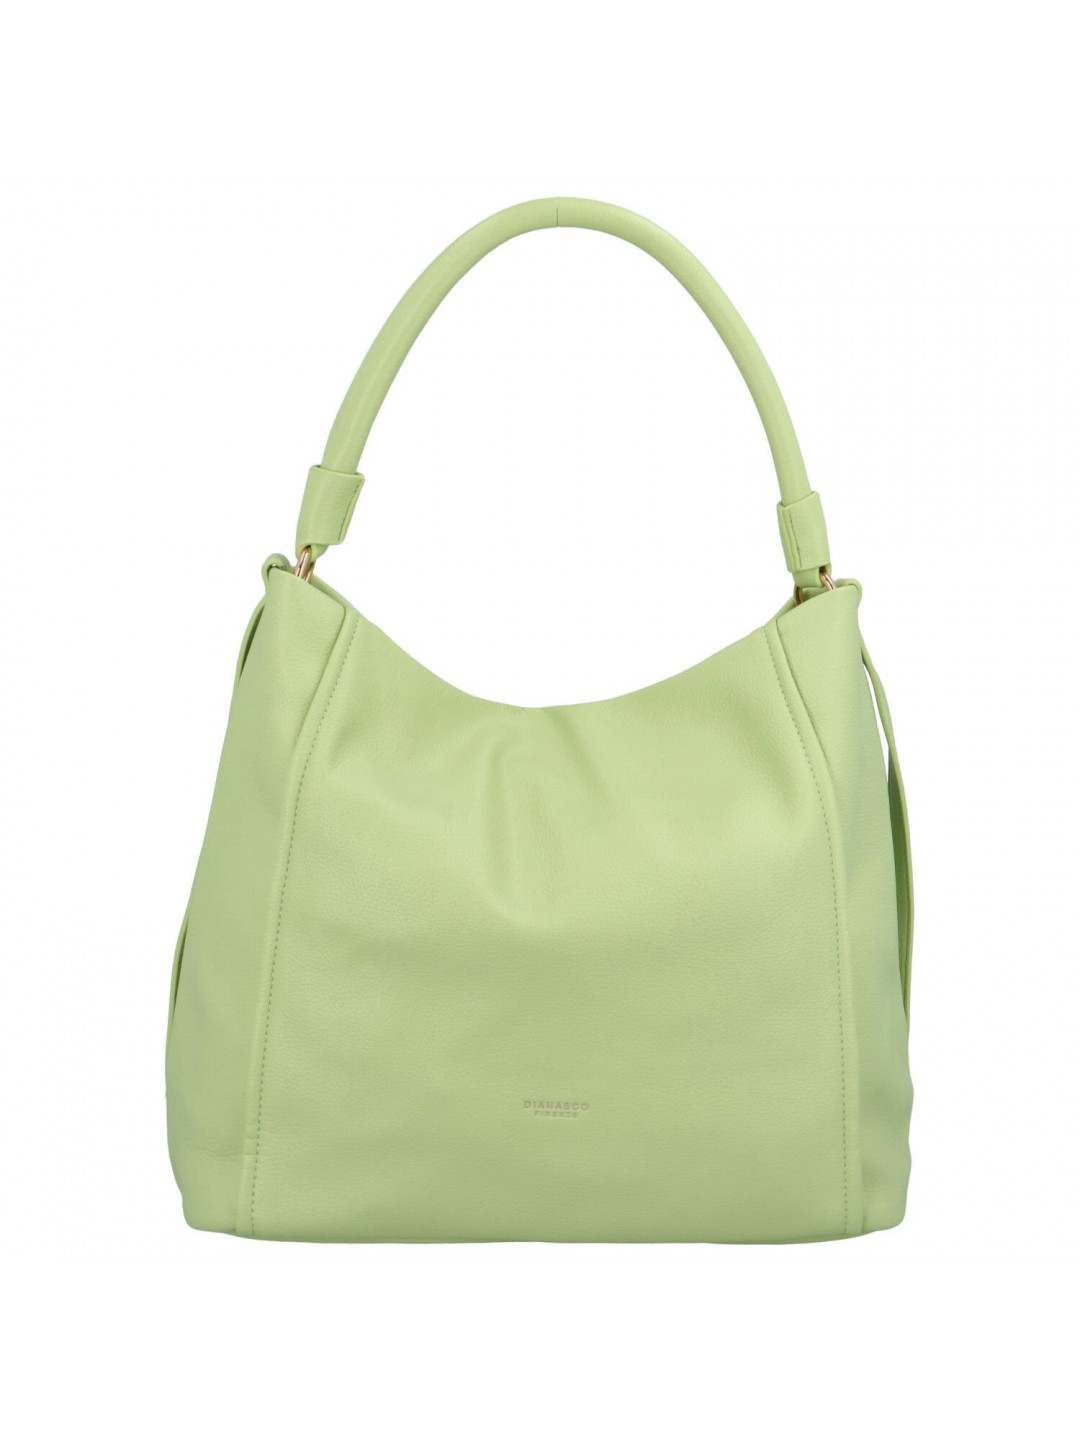 Moderní dámská koženková kabelka Adita zelená